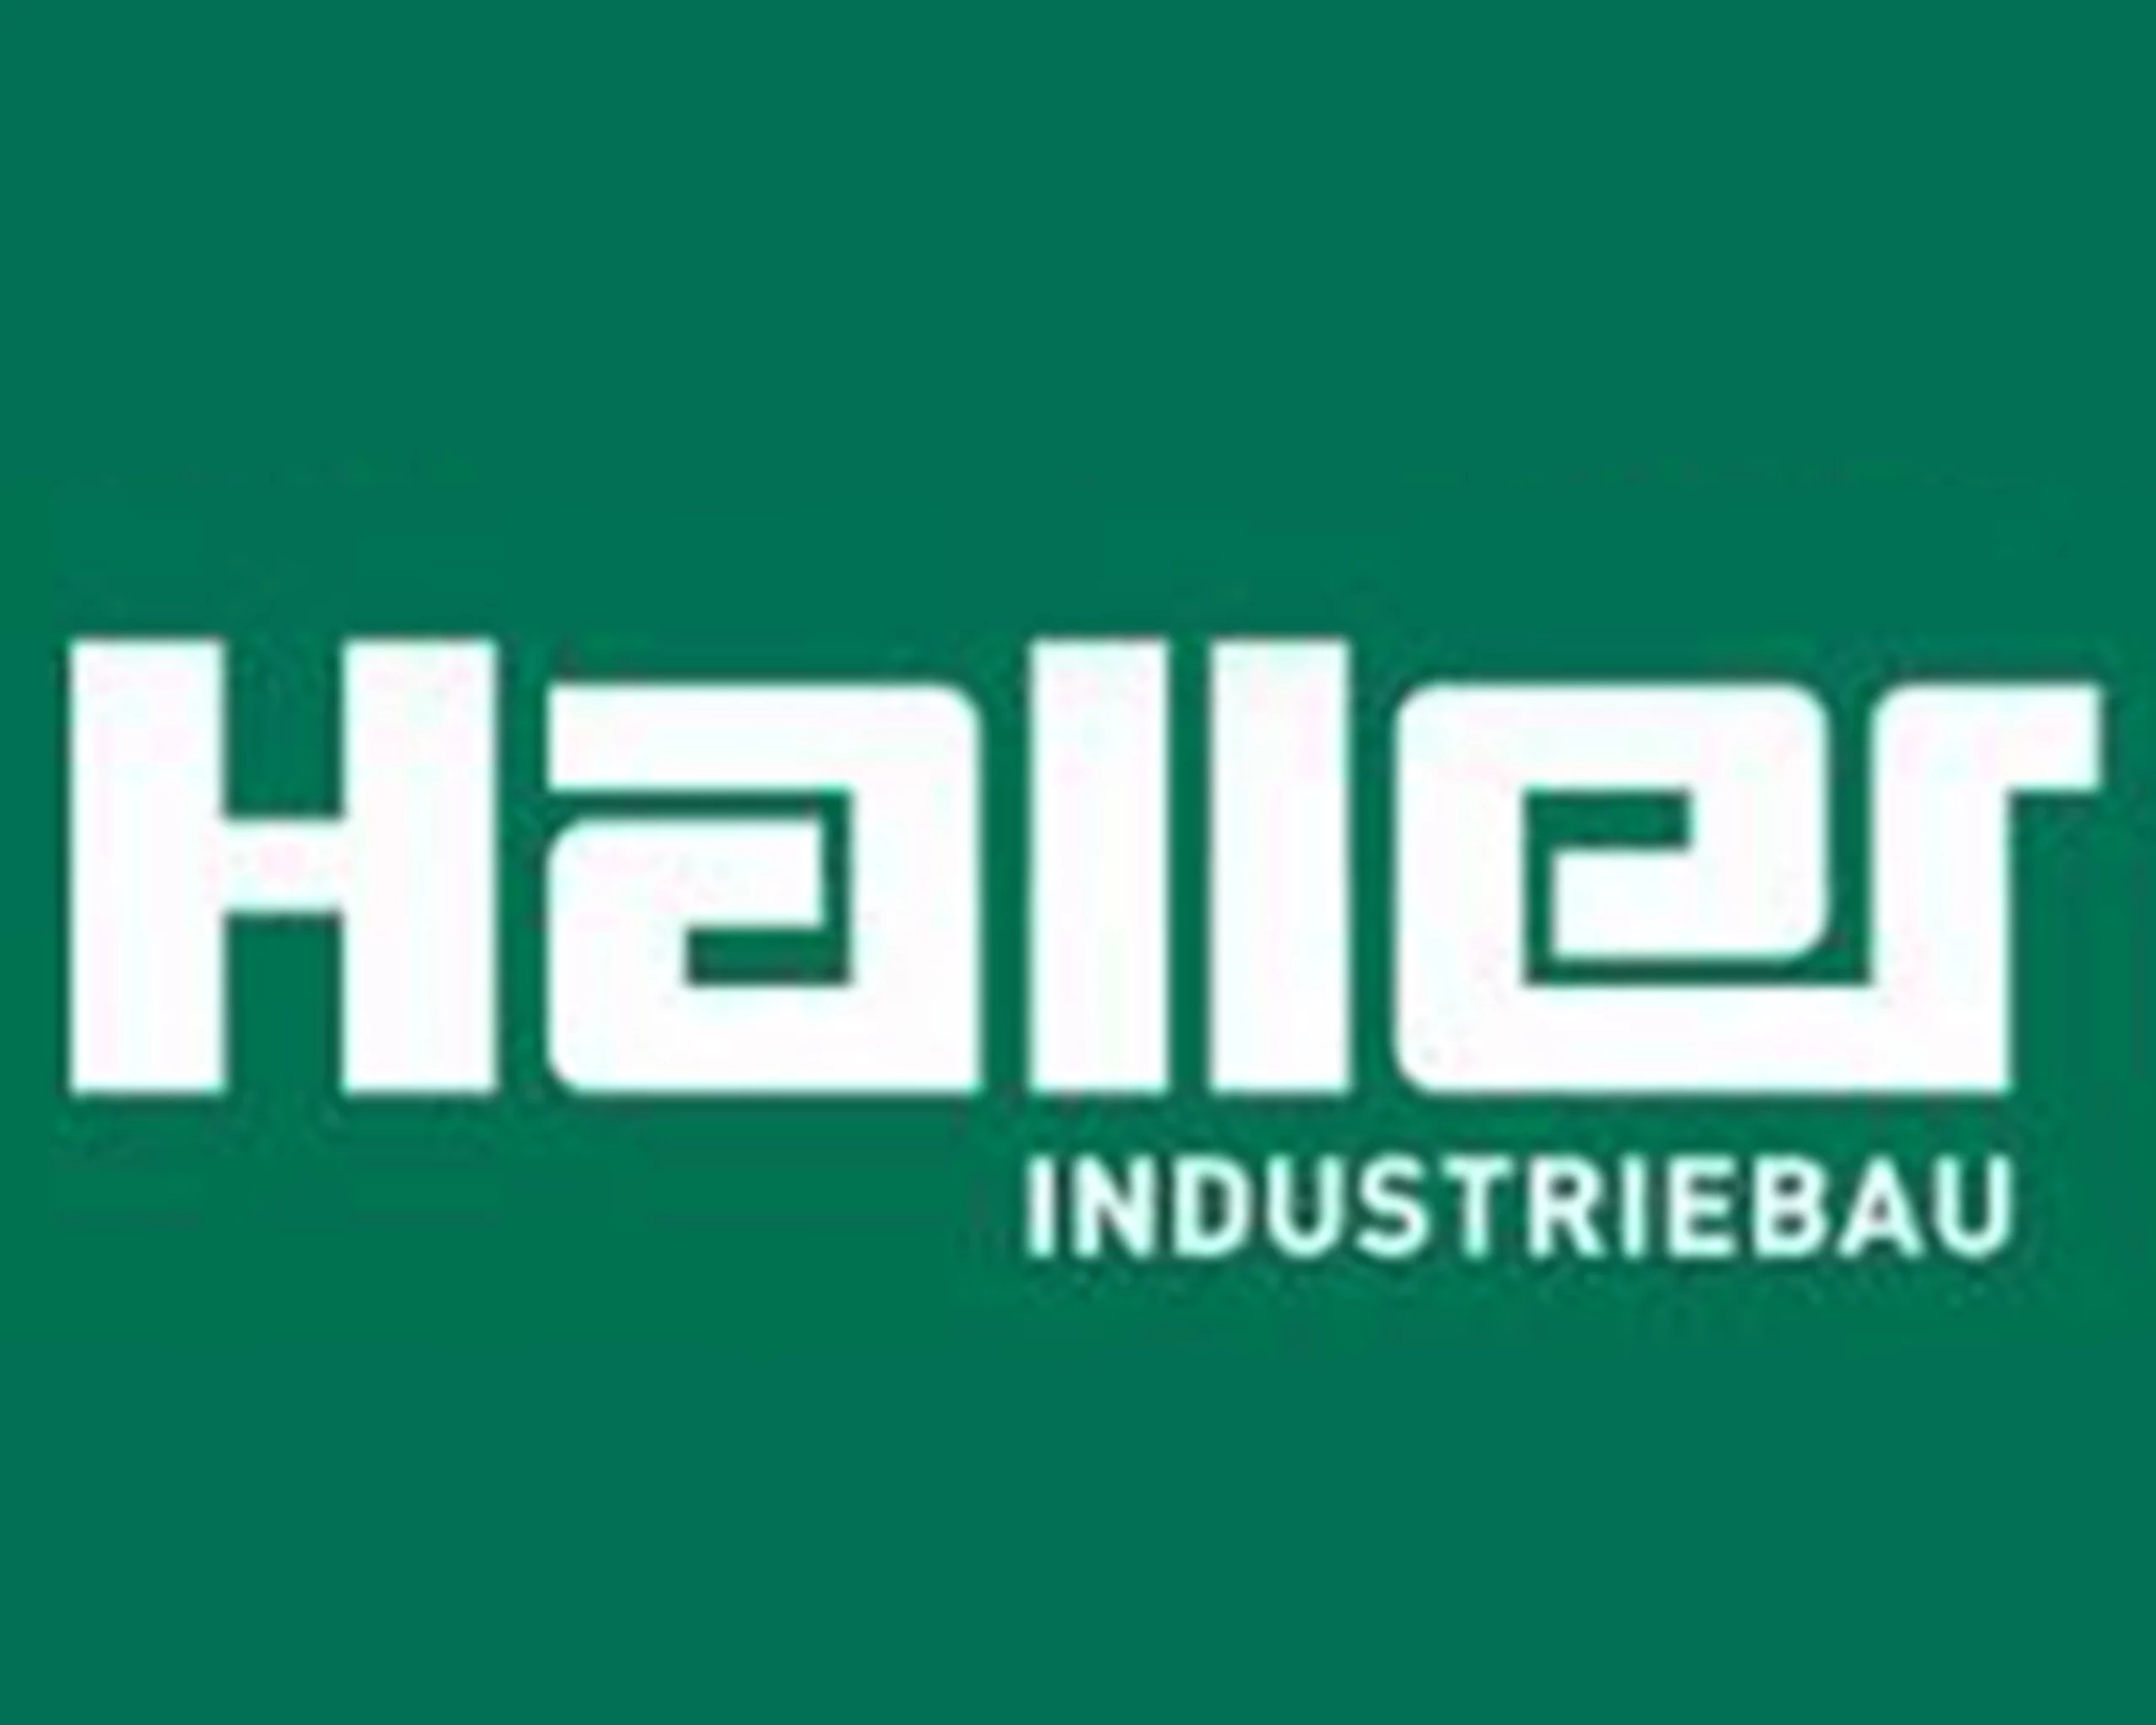 Haller-Industriebau-grüner-Hintergrund